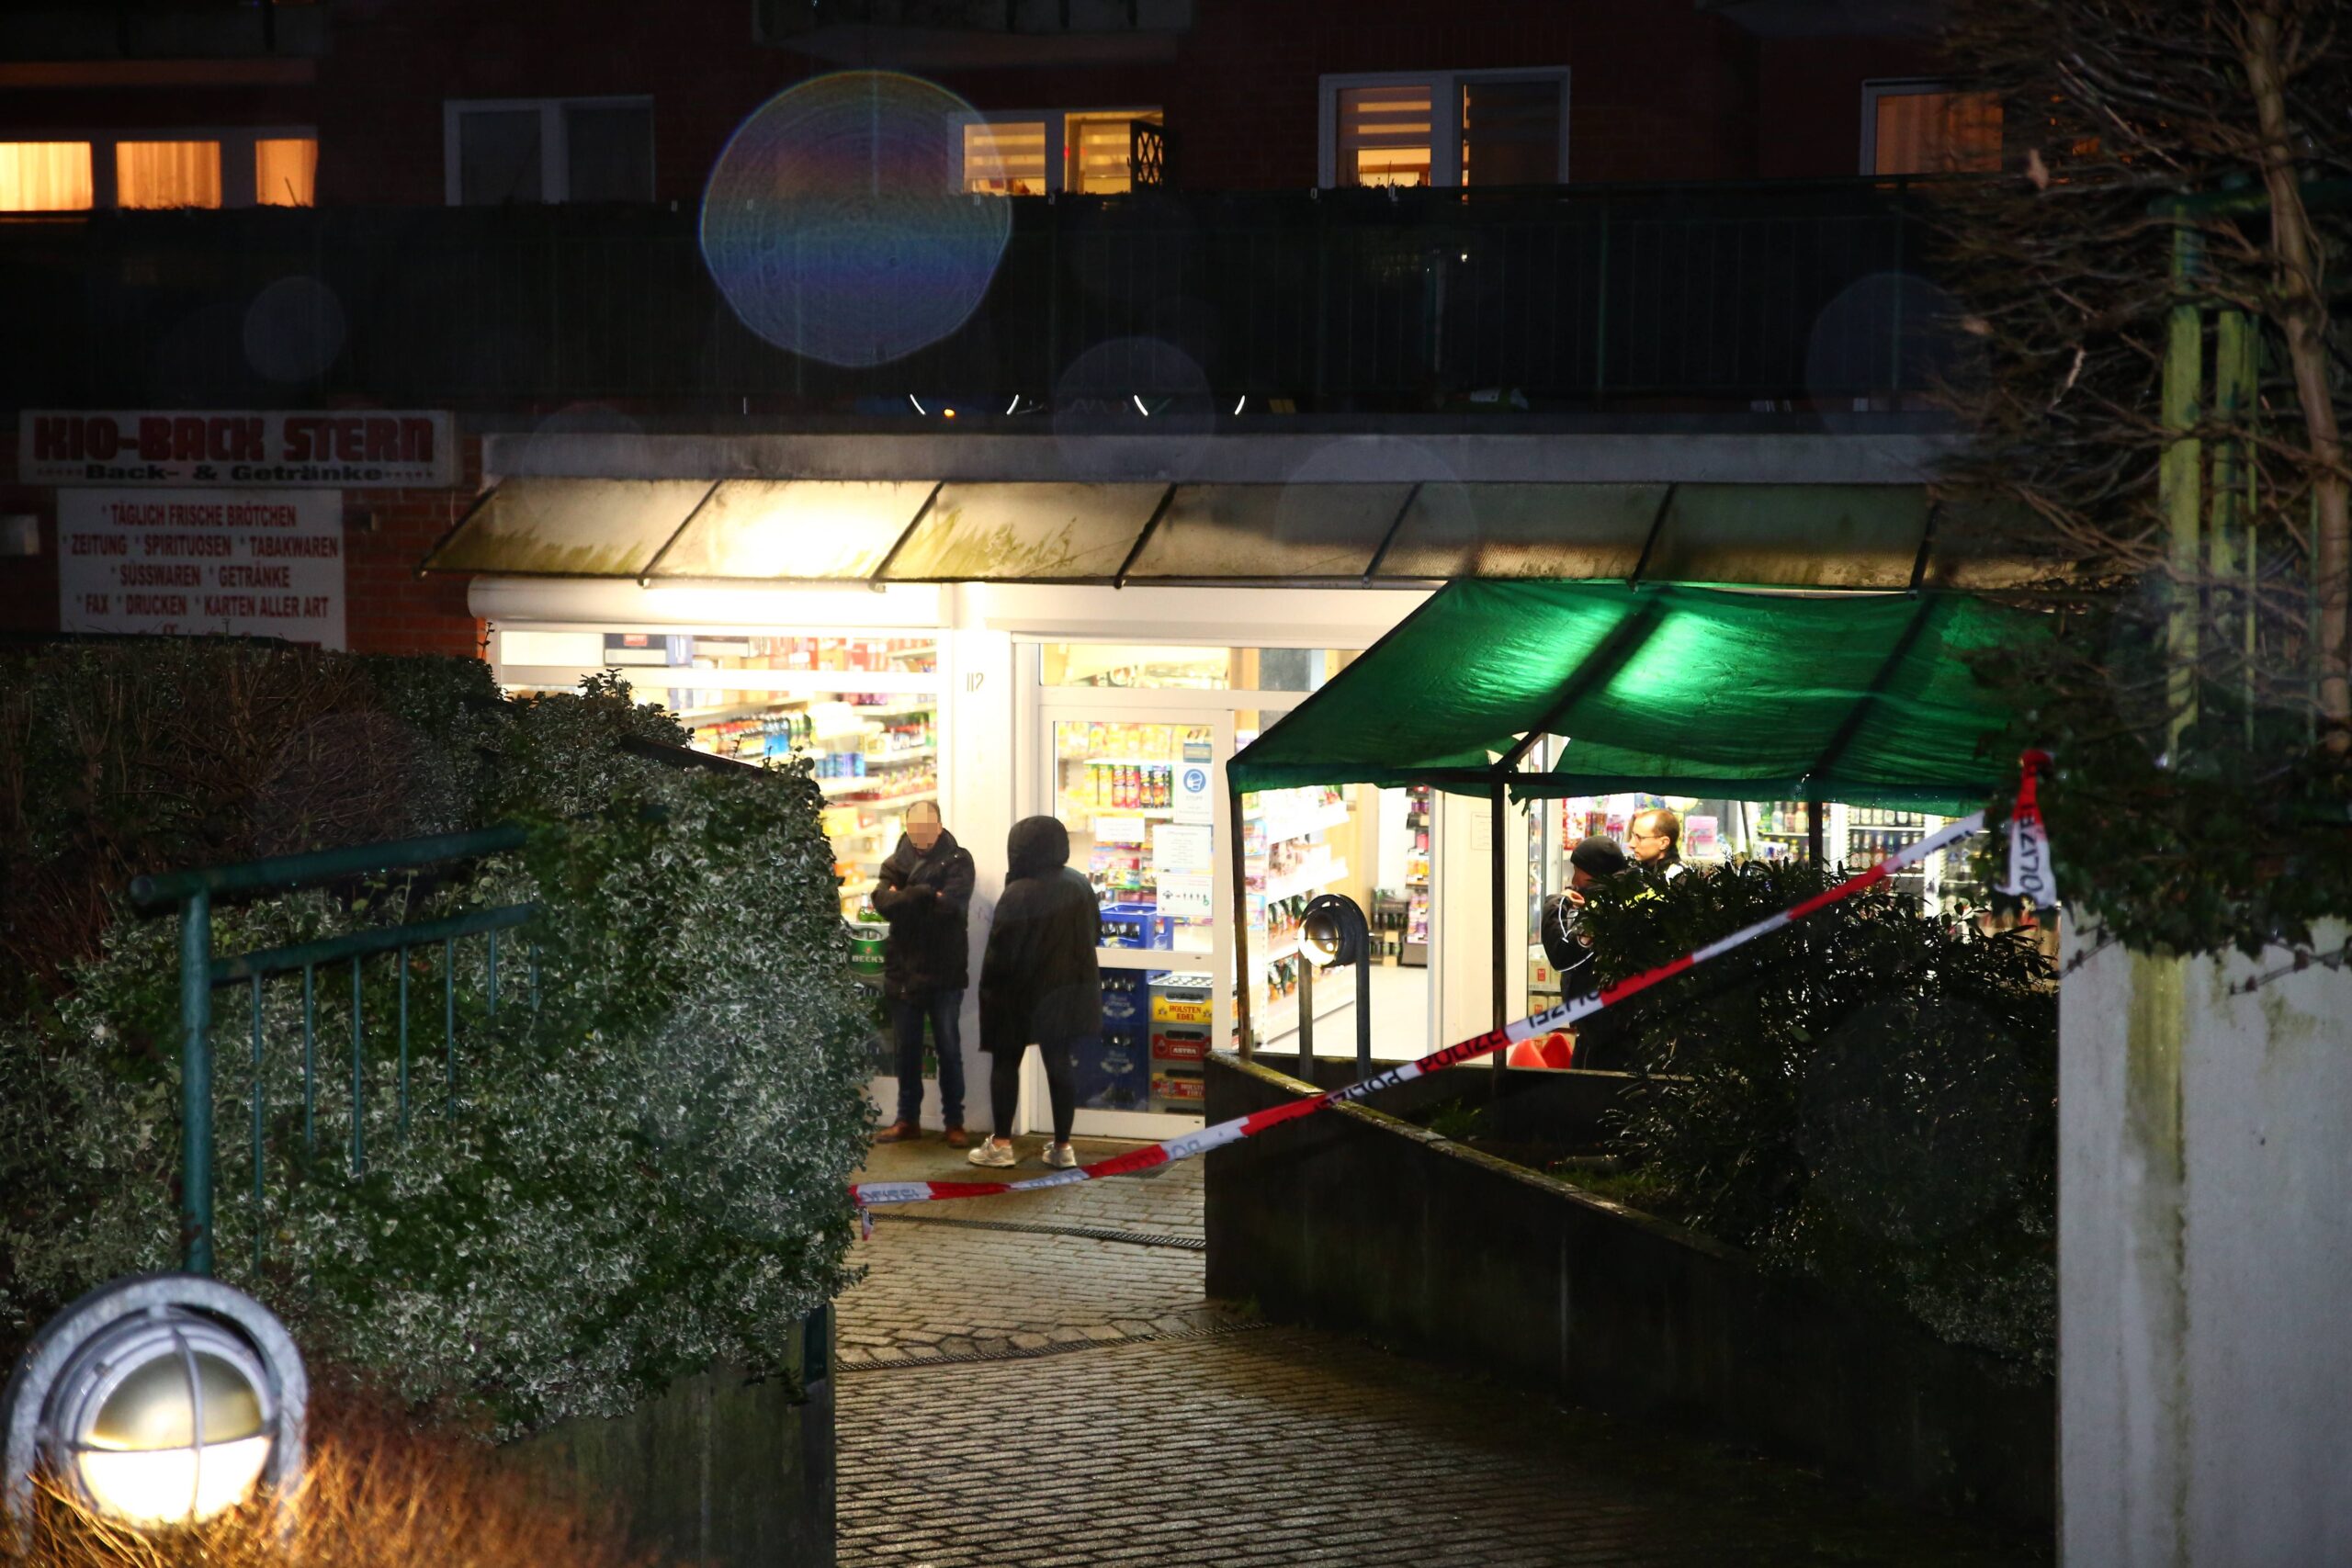 Rot-weißes Flatterband ist vor einem Kiosk angebracht, Männer und Polizisten stehen vor der Tür